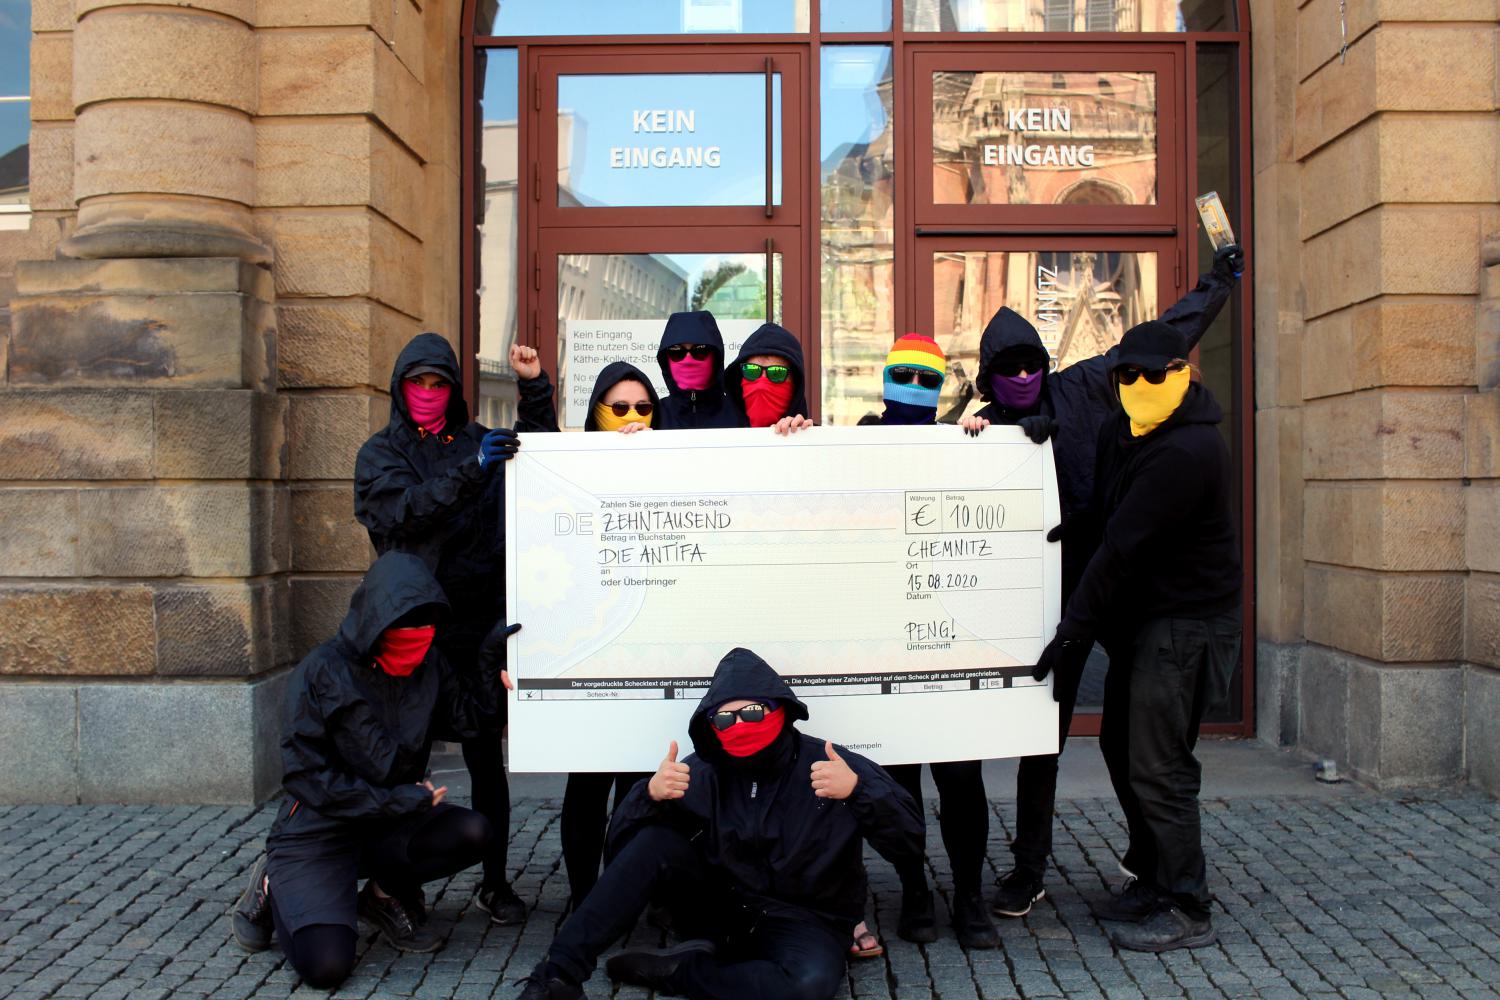 Peng! Kollektiv gibt 10.000 Euro Steuergeld an Antifa im Rahmen des Festivals "Gegenwarten" in Chemnitz